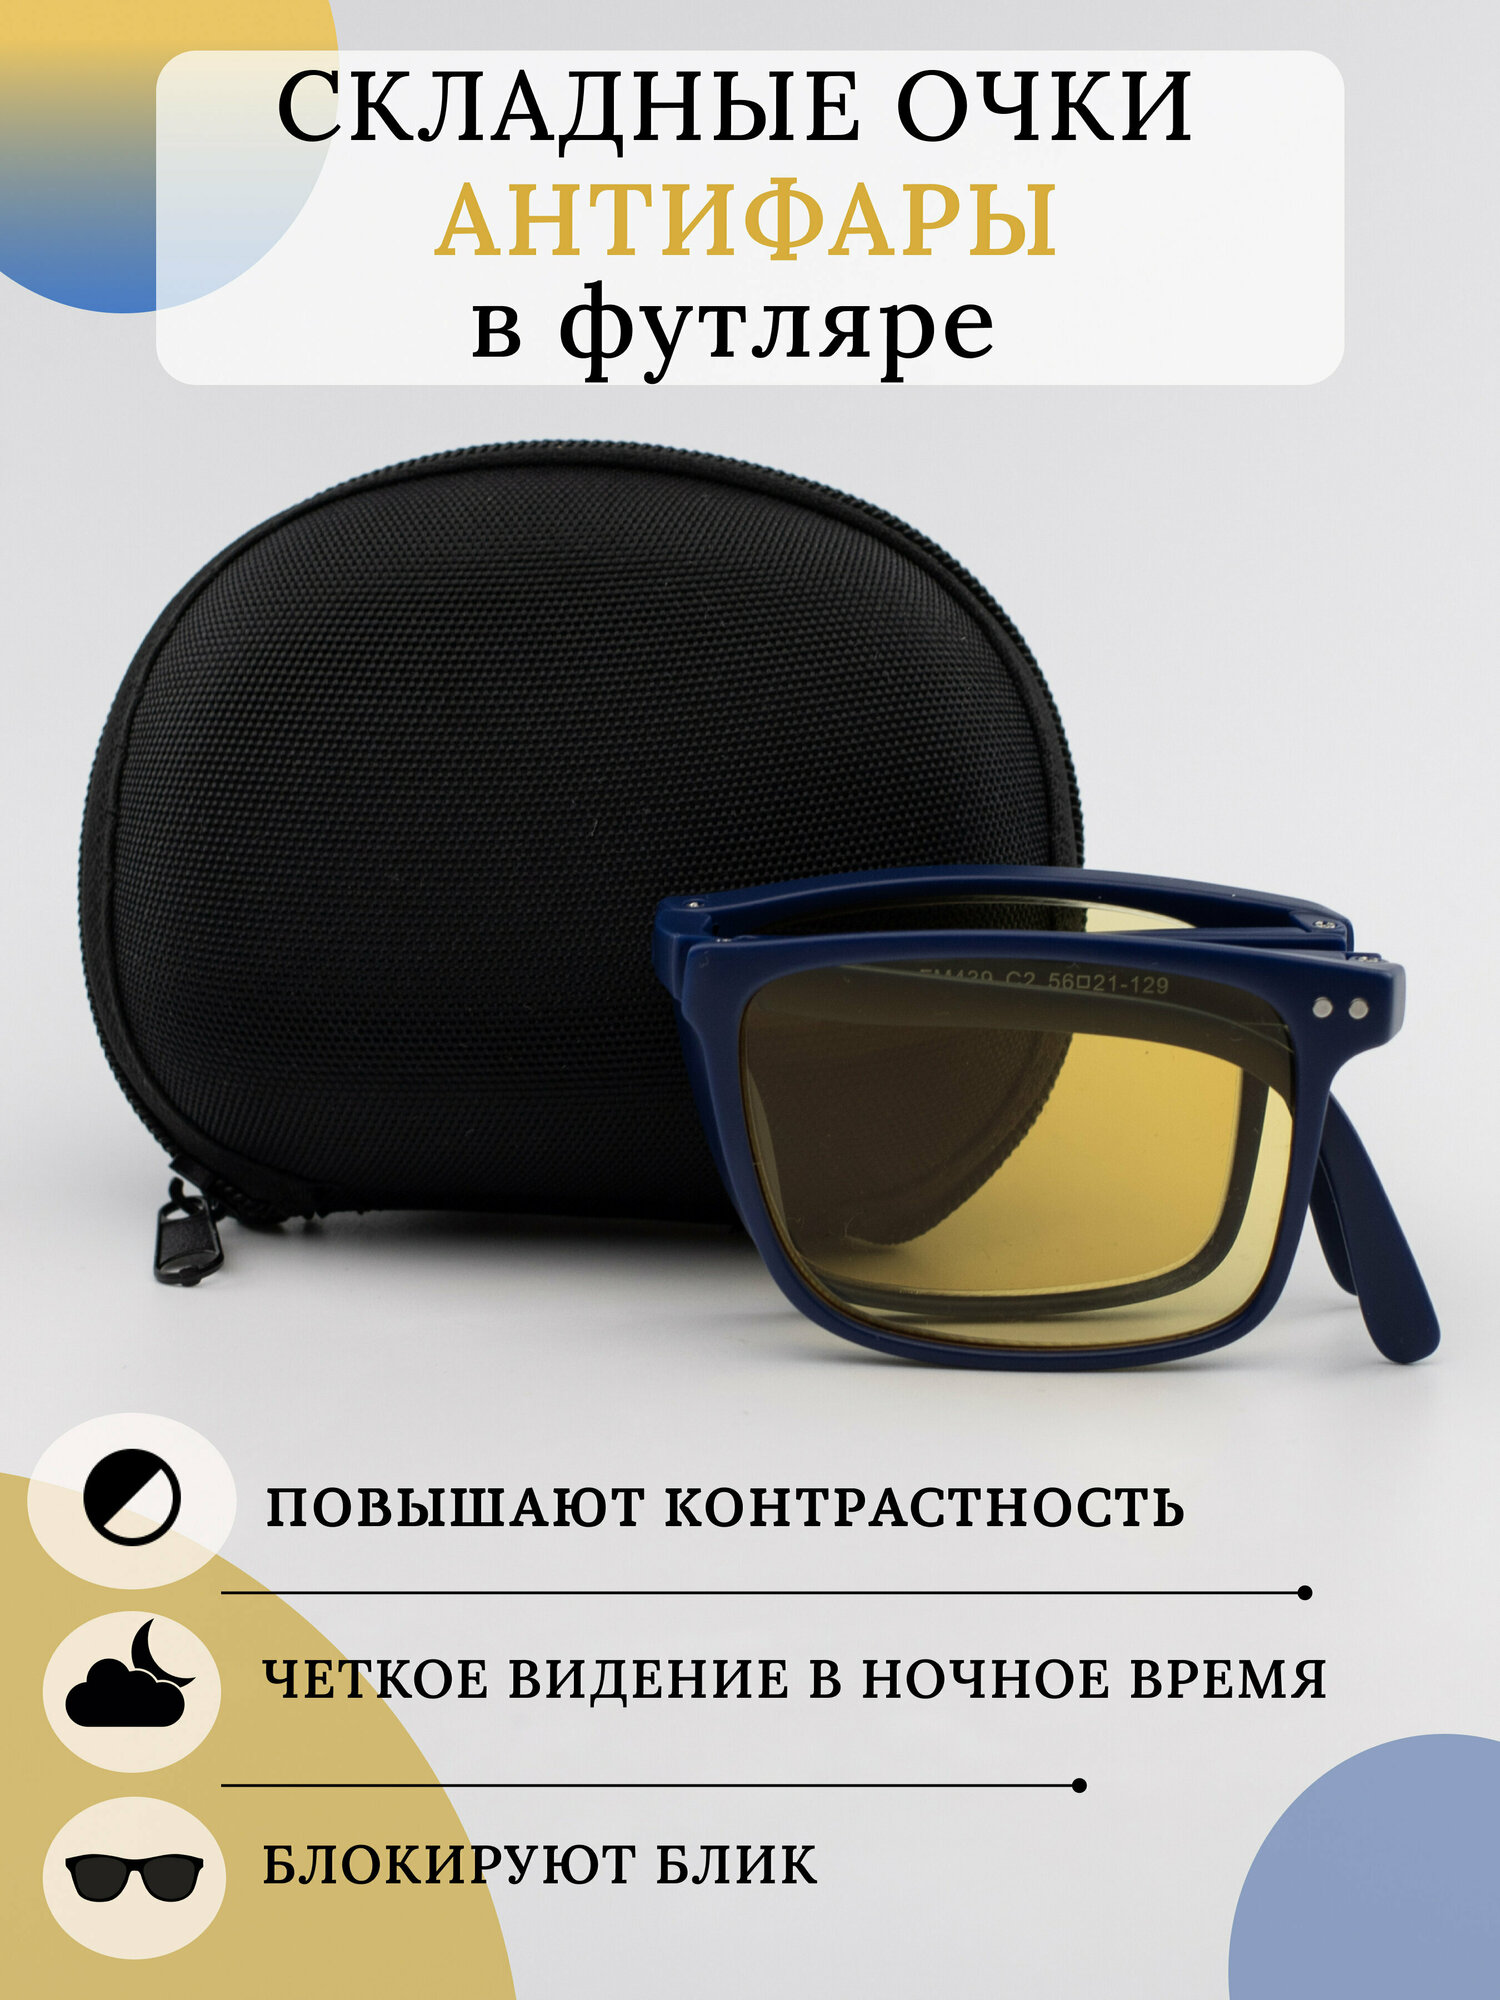 Складные очки для зрения -1.0 / Корригирующие очки с диоптрией -1,0 / Очки для вождения -1